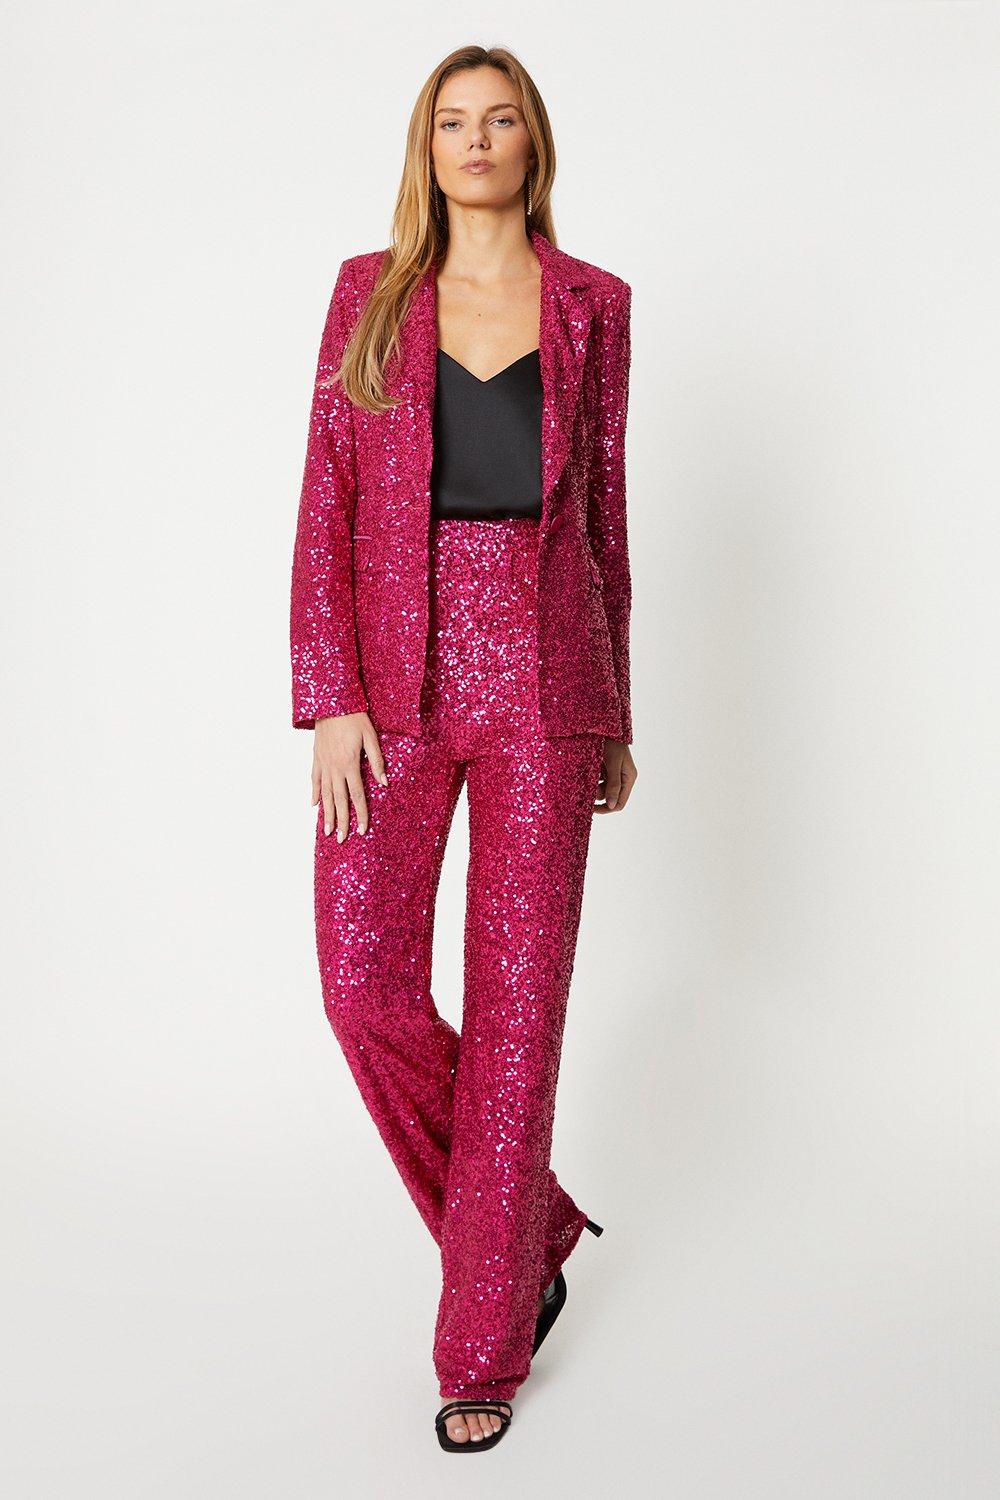 Однобортный пиджак с пайетками Coast, розовый болеро с пайетками 40 размер